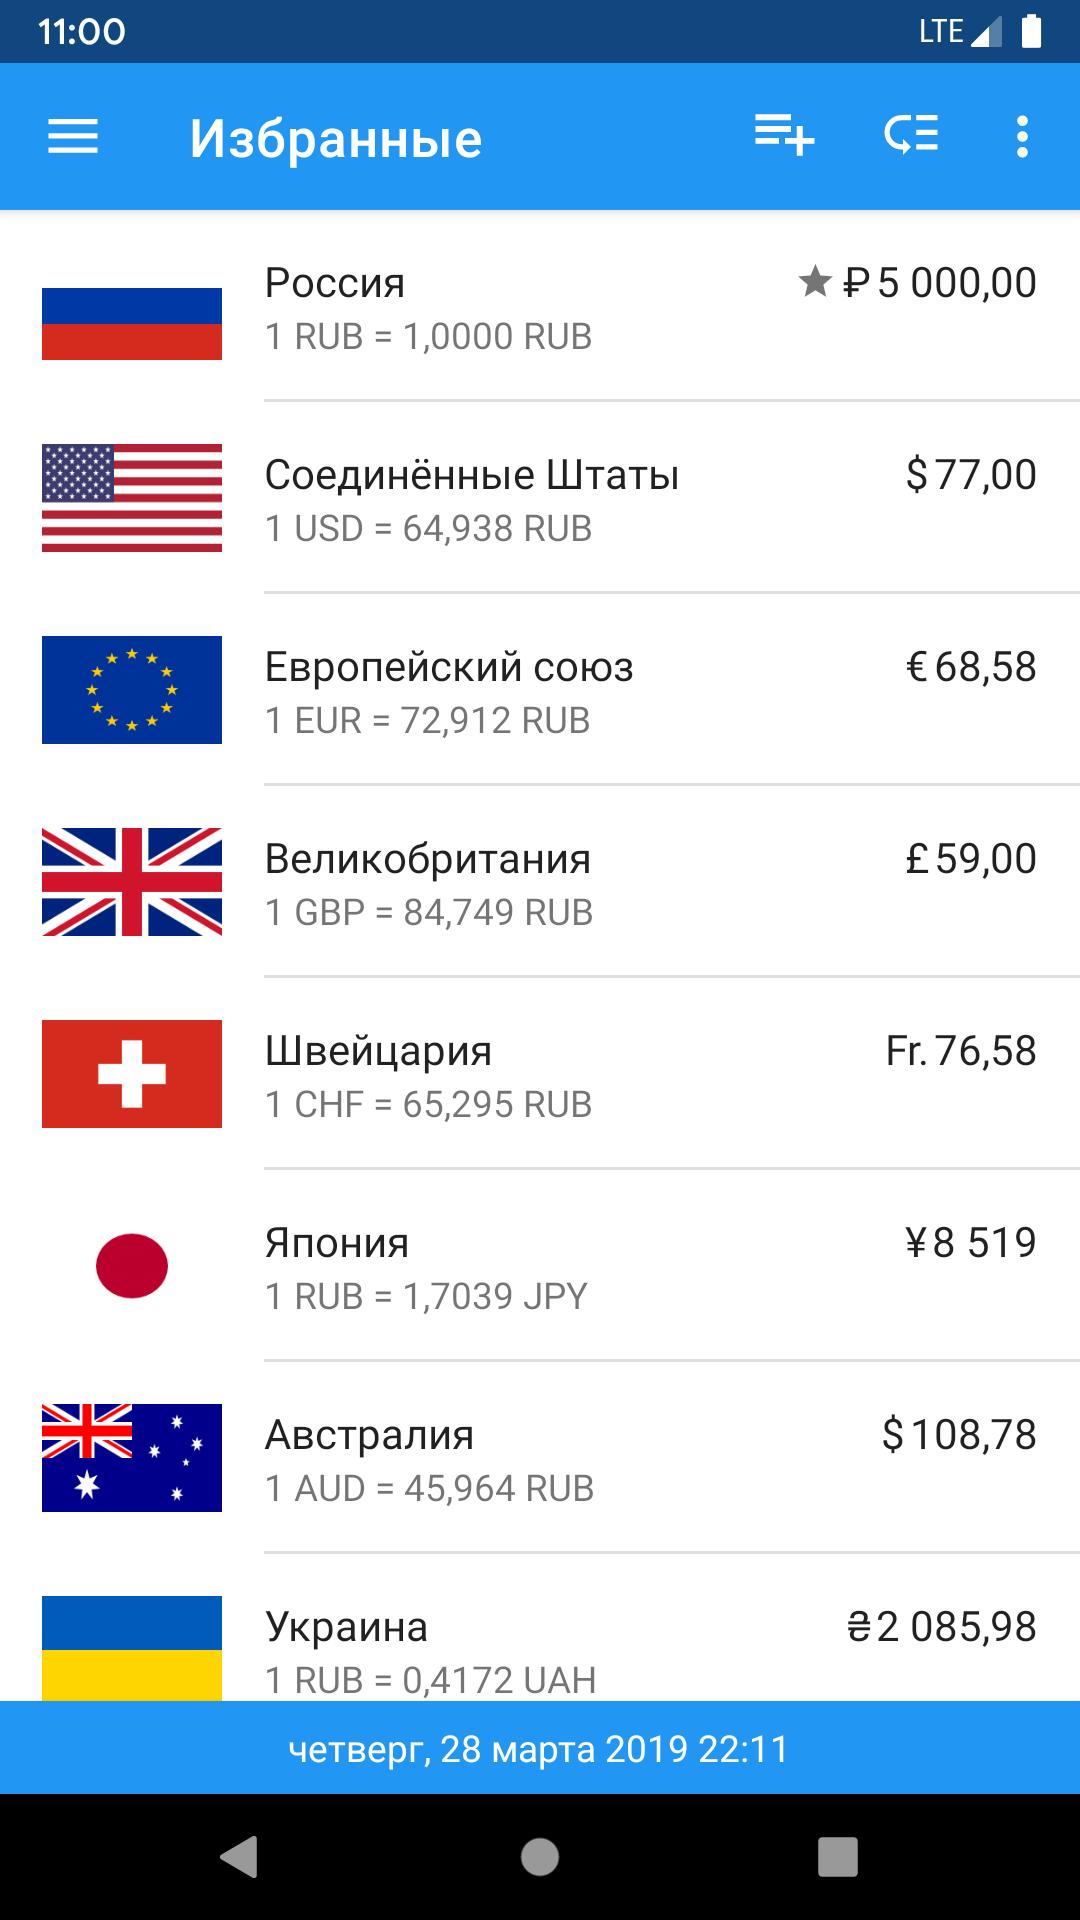 Конвертер валют доллар рубль на сегодня